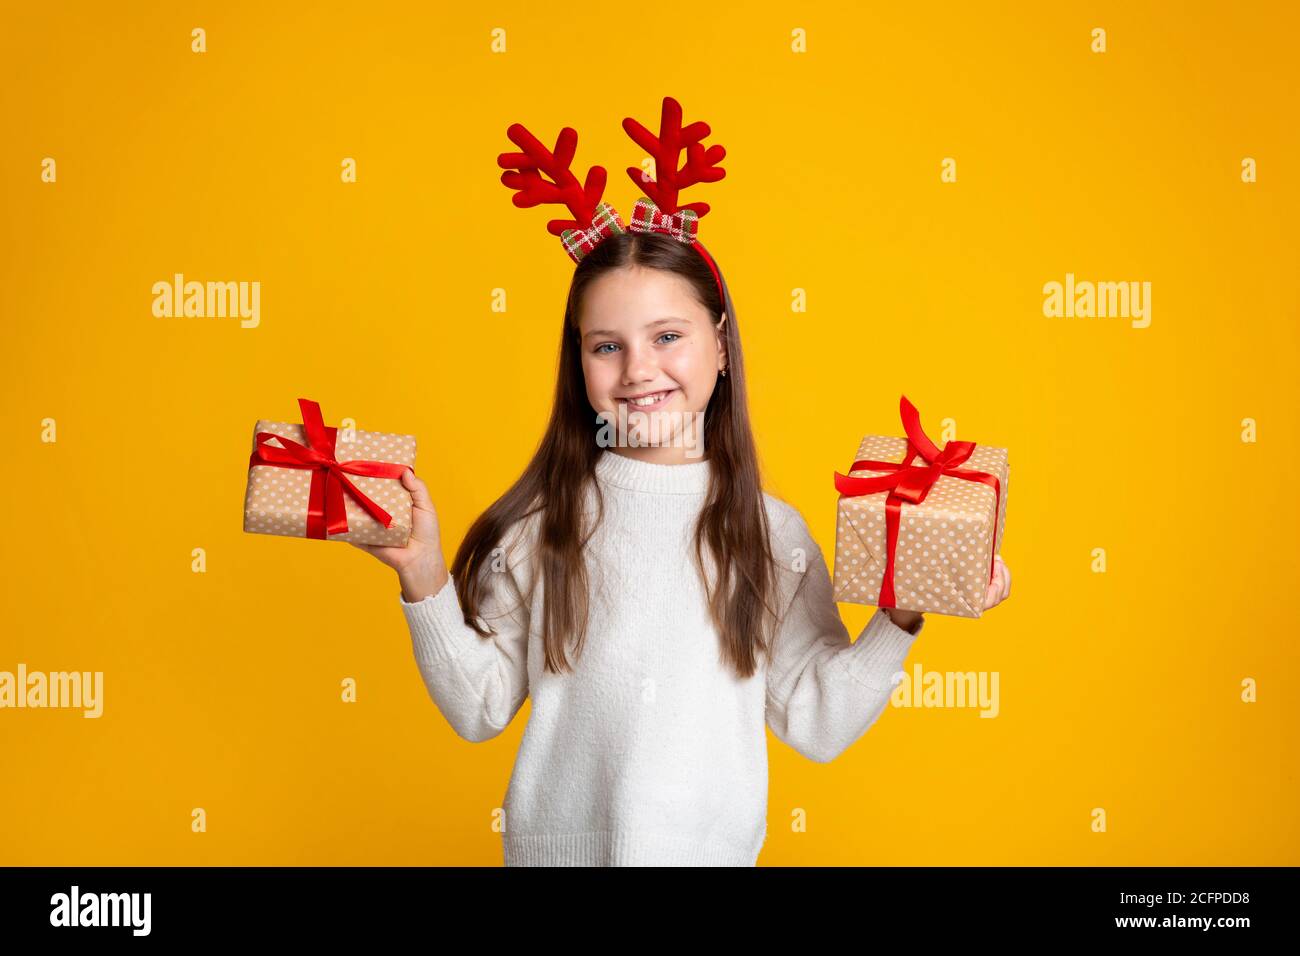 Kindheit, Weihnachten und Stimmung. Lächelndes Kind, das zwei Geschenke in ihren Händen hält Stockfoto